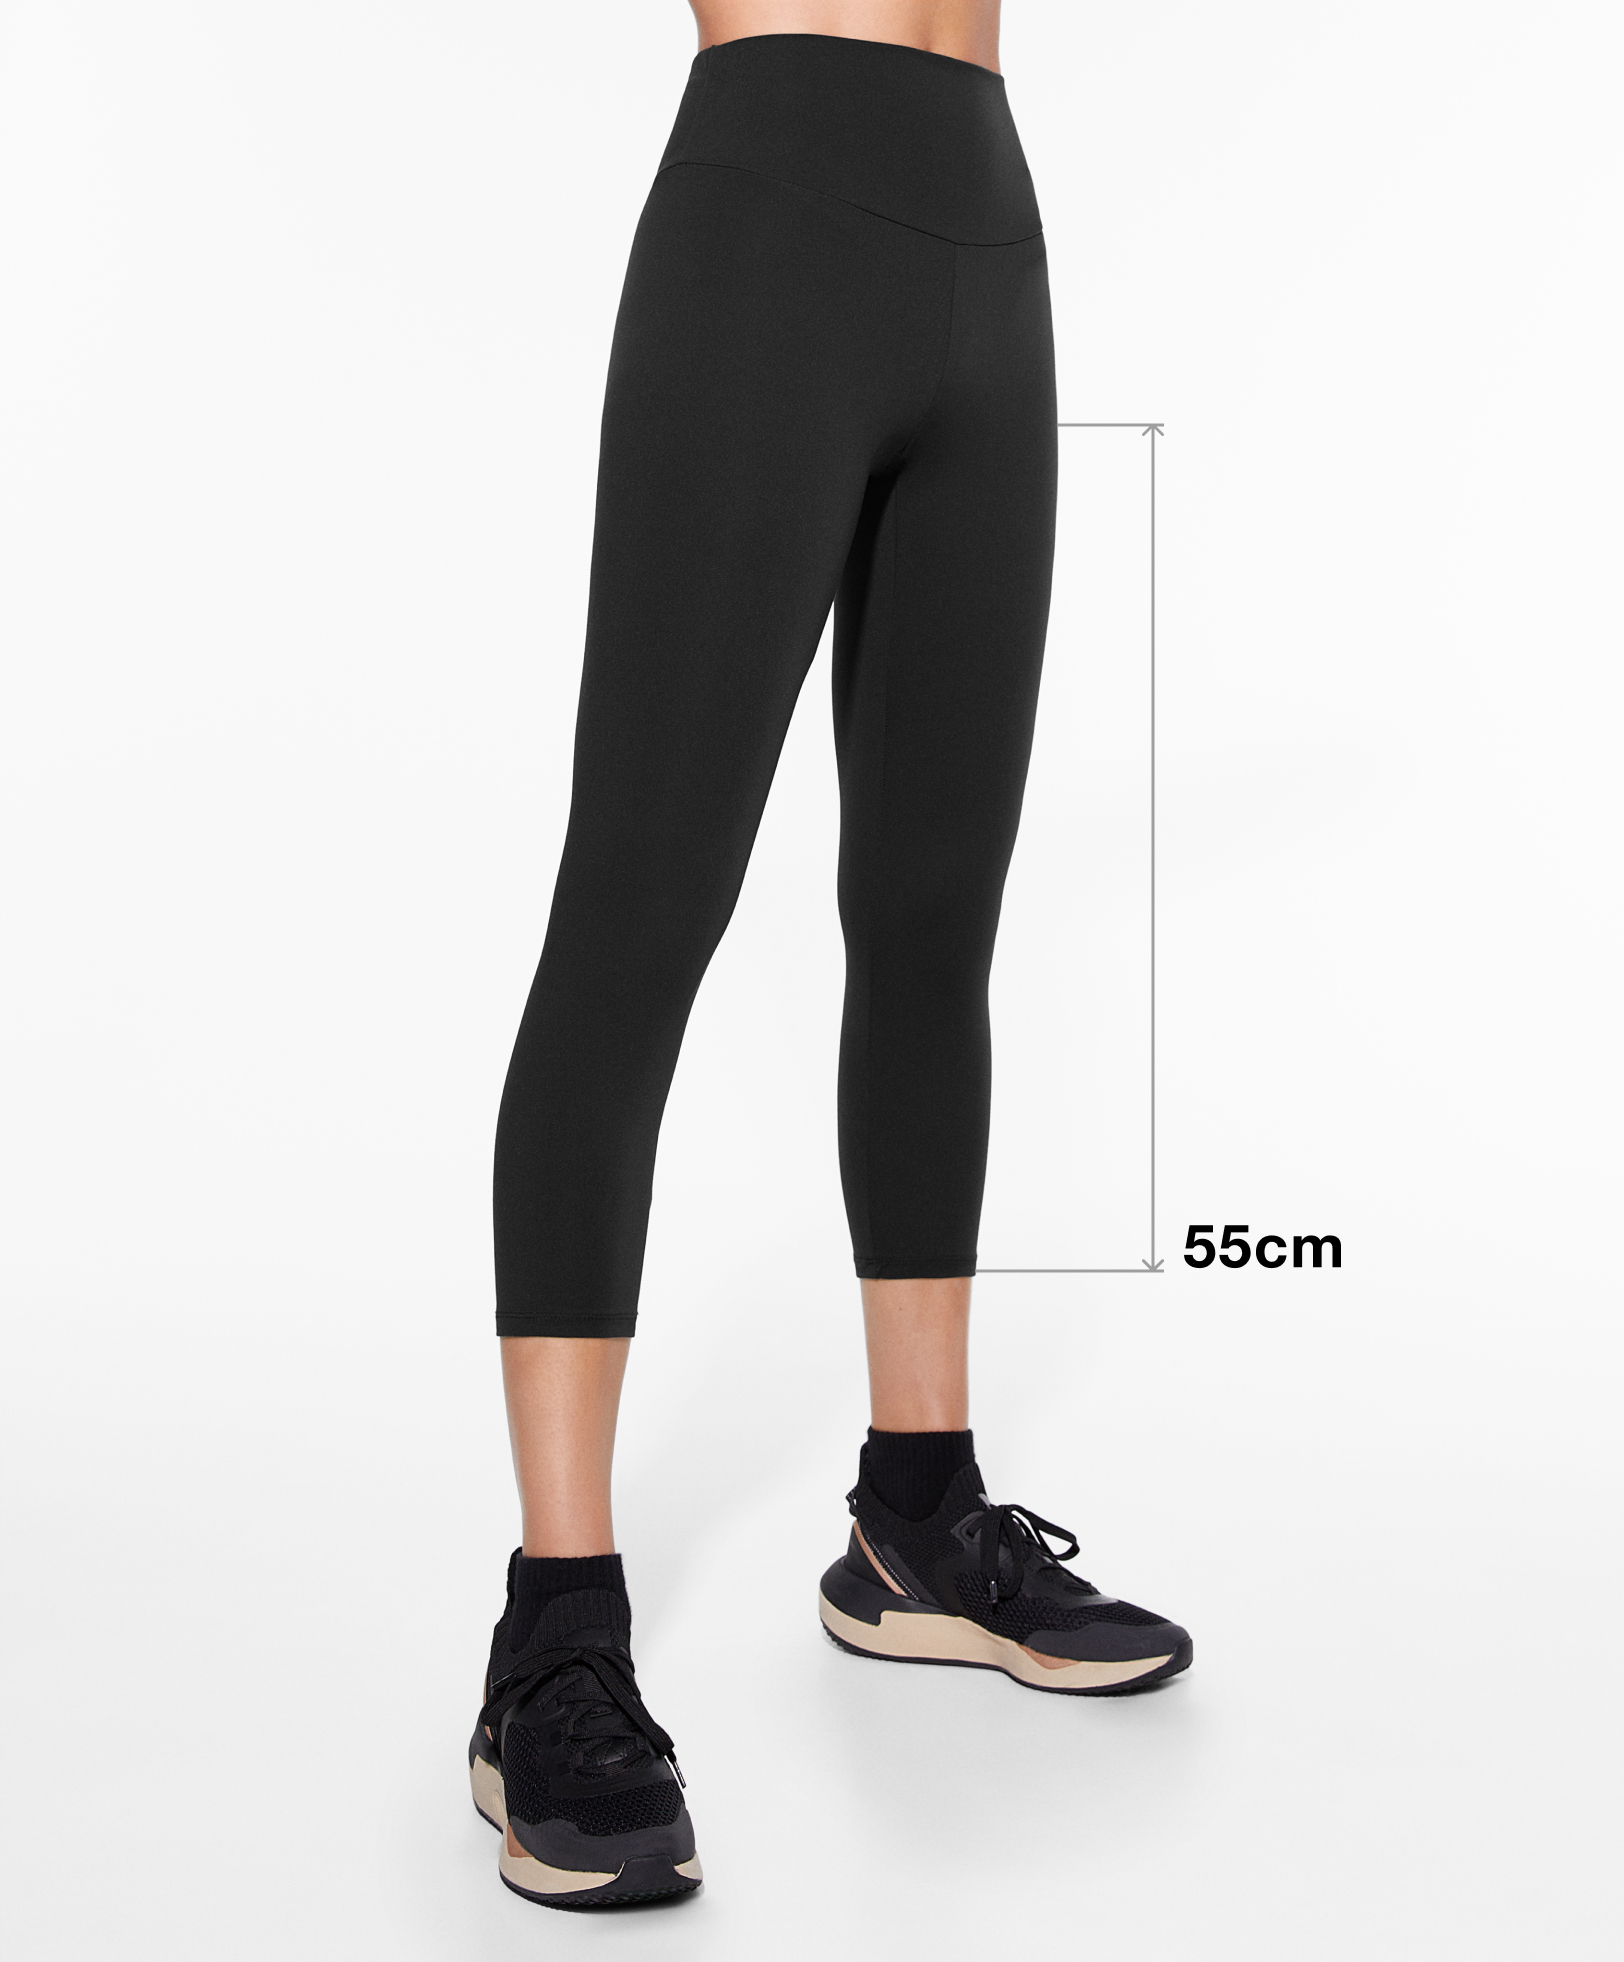 Comfortlux medium-rise 65cm ankle-length leggings